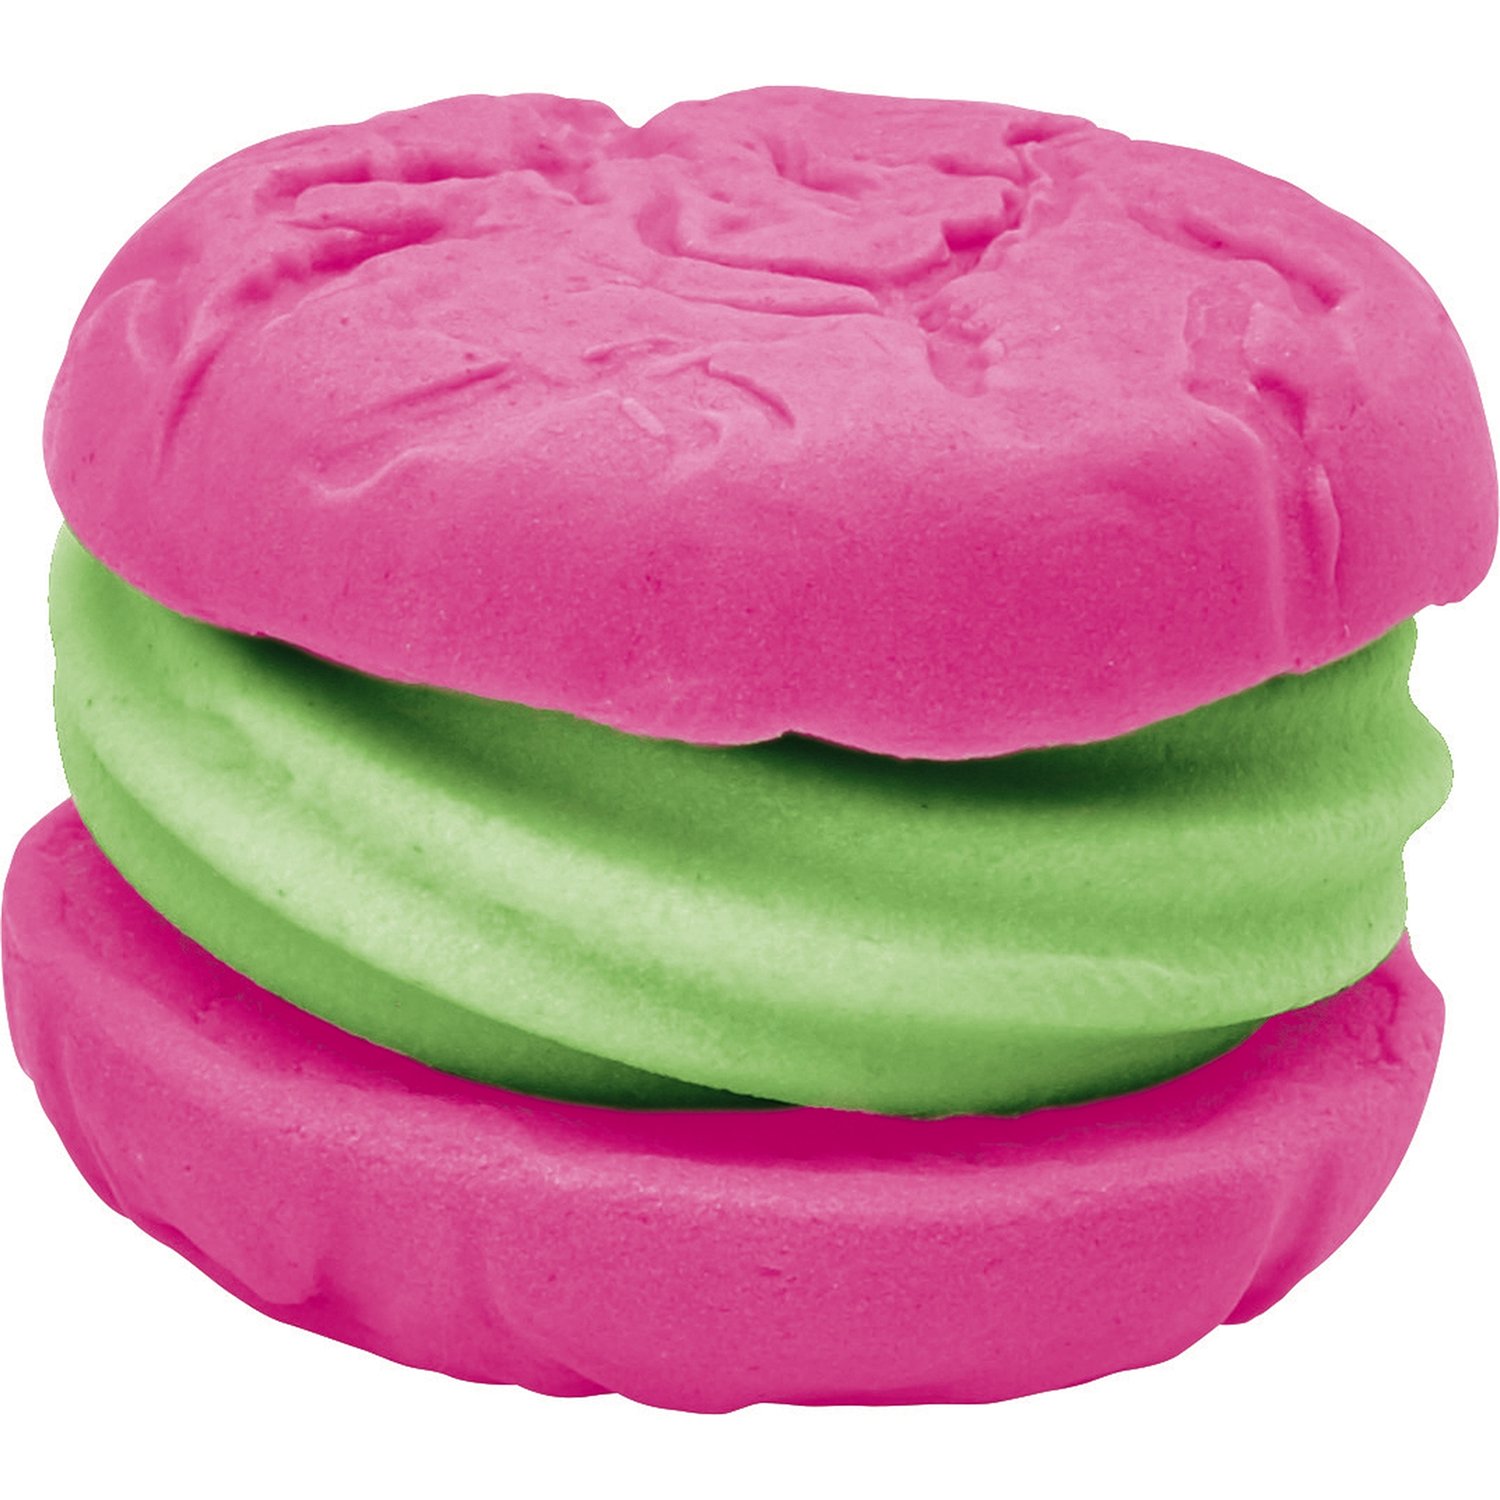 Набор Play-Doh Миксер для конфет E0102EU6